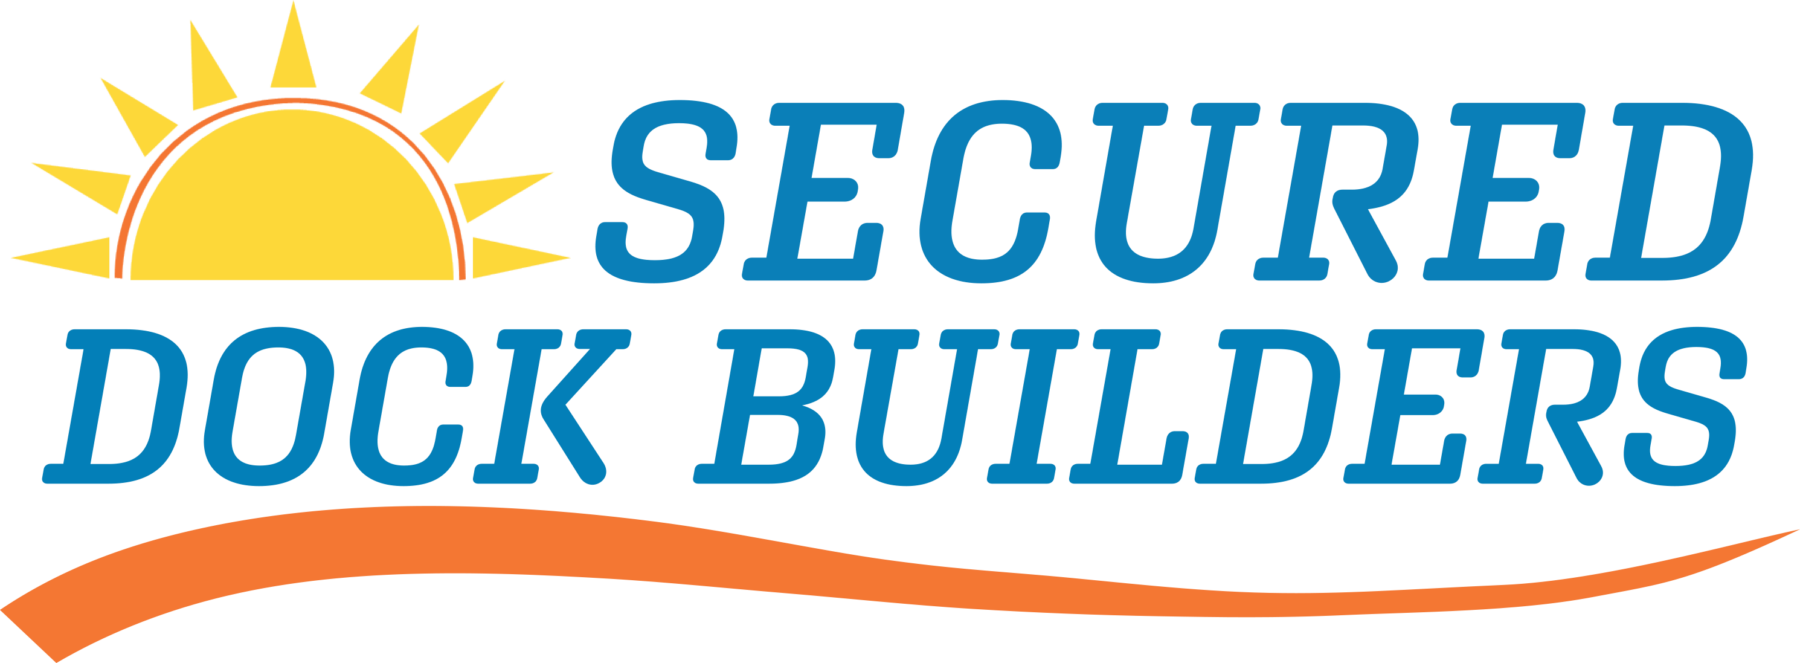 Secured Dock Builders